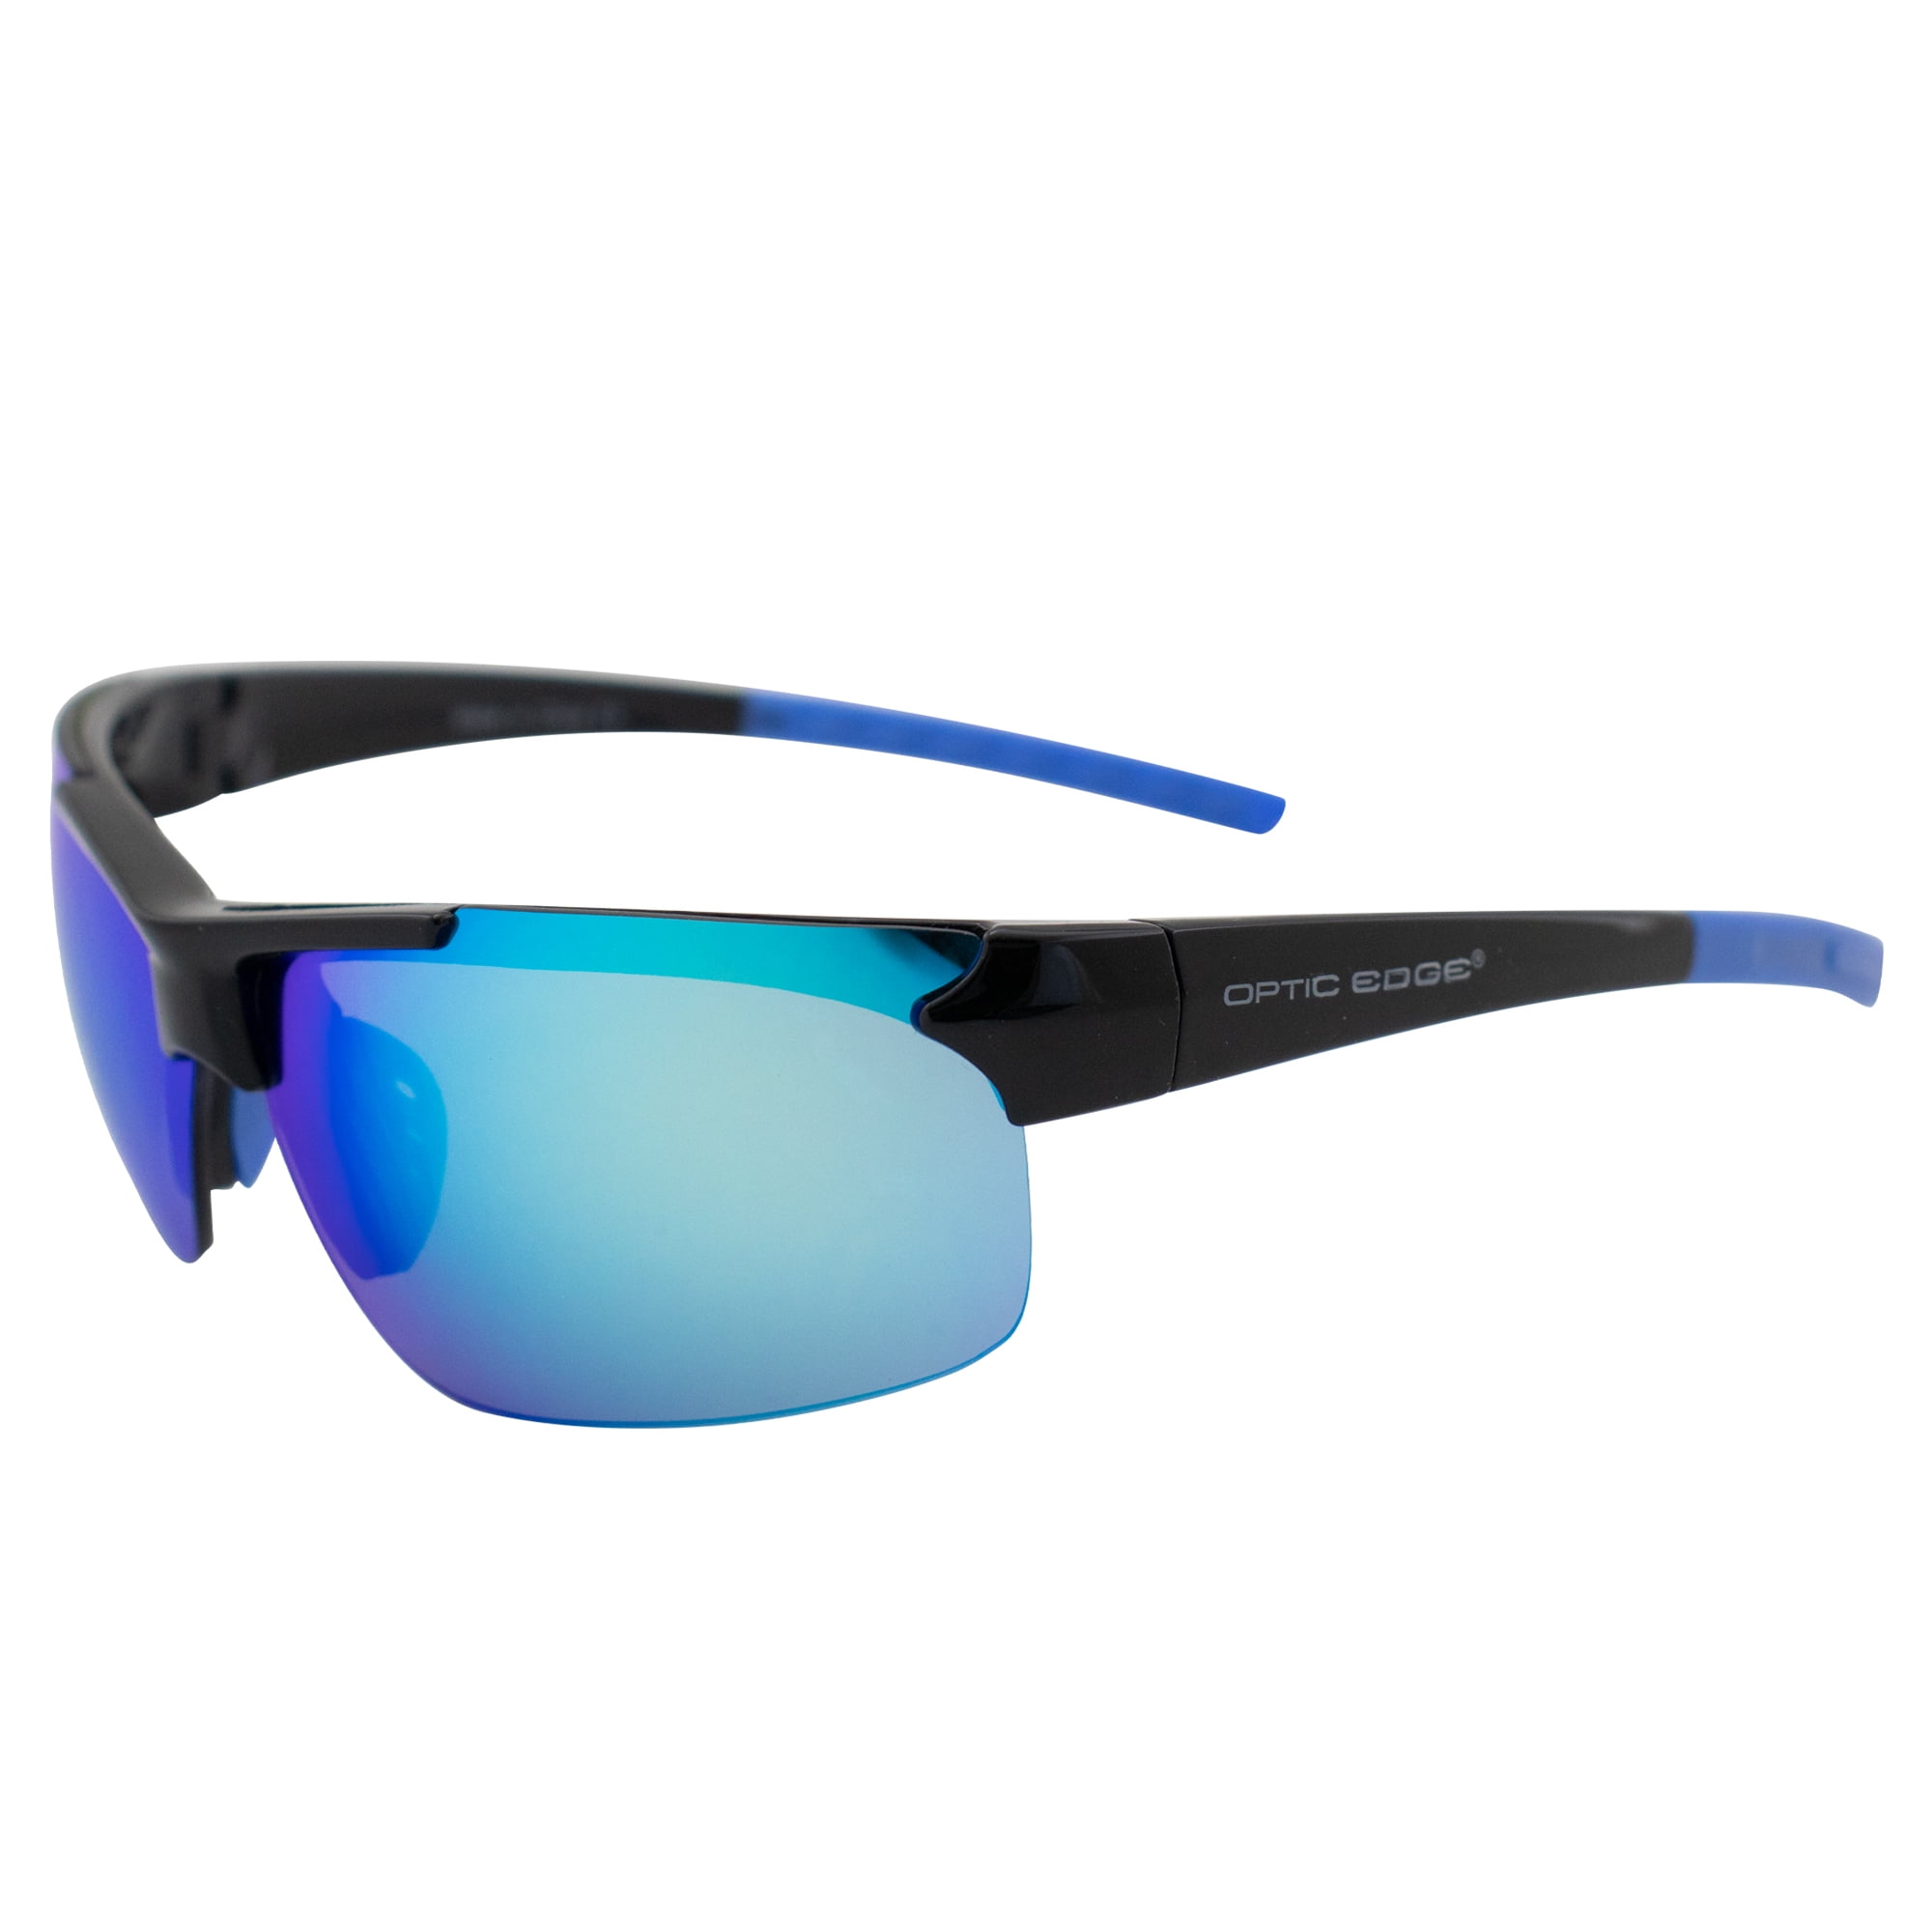 Optic Edge Frontrunner Sports & Motorcycle Sunglasses for Men or